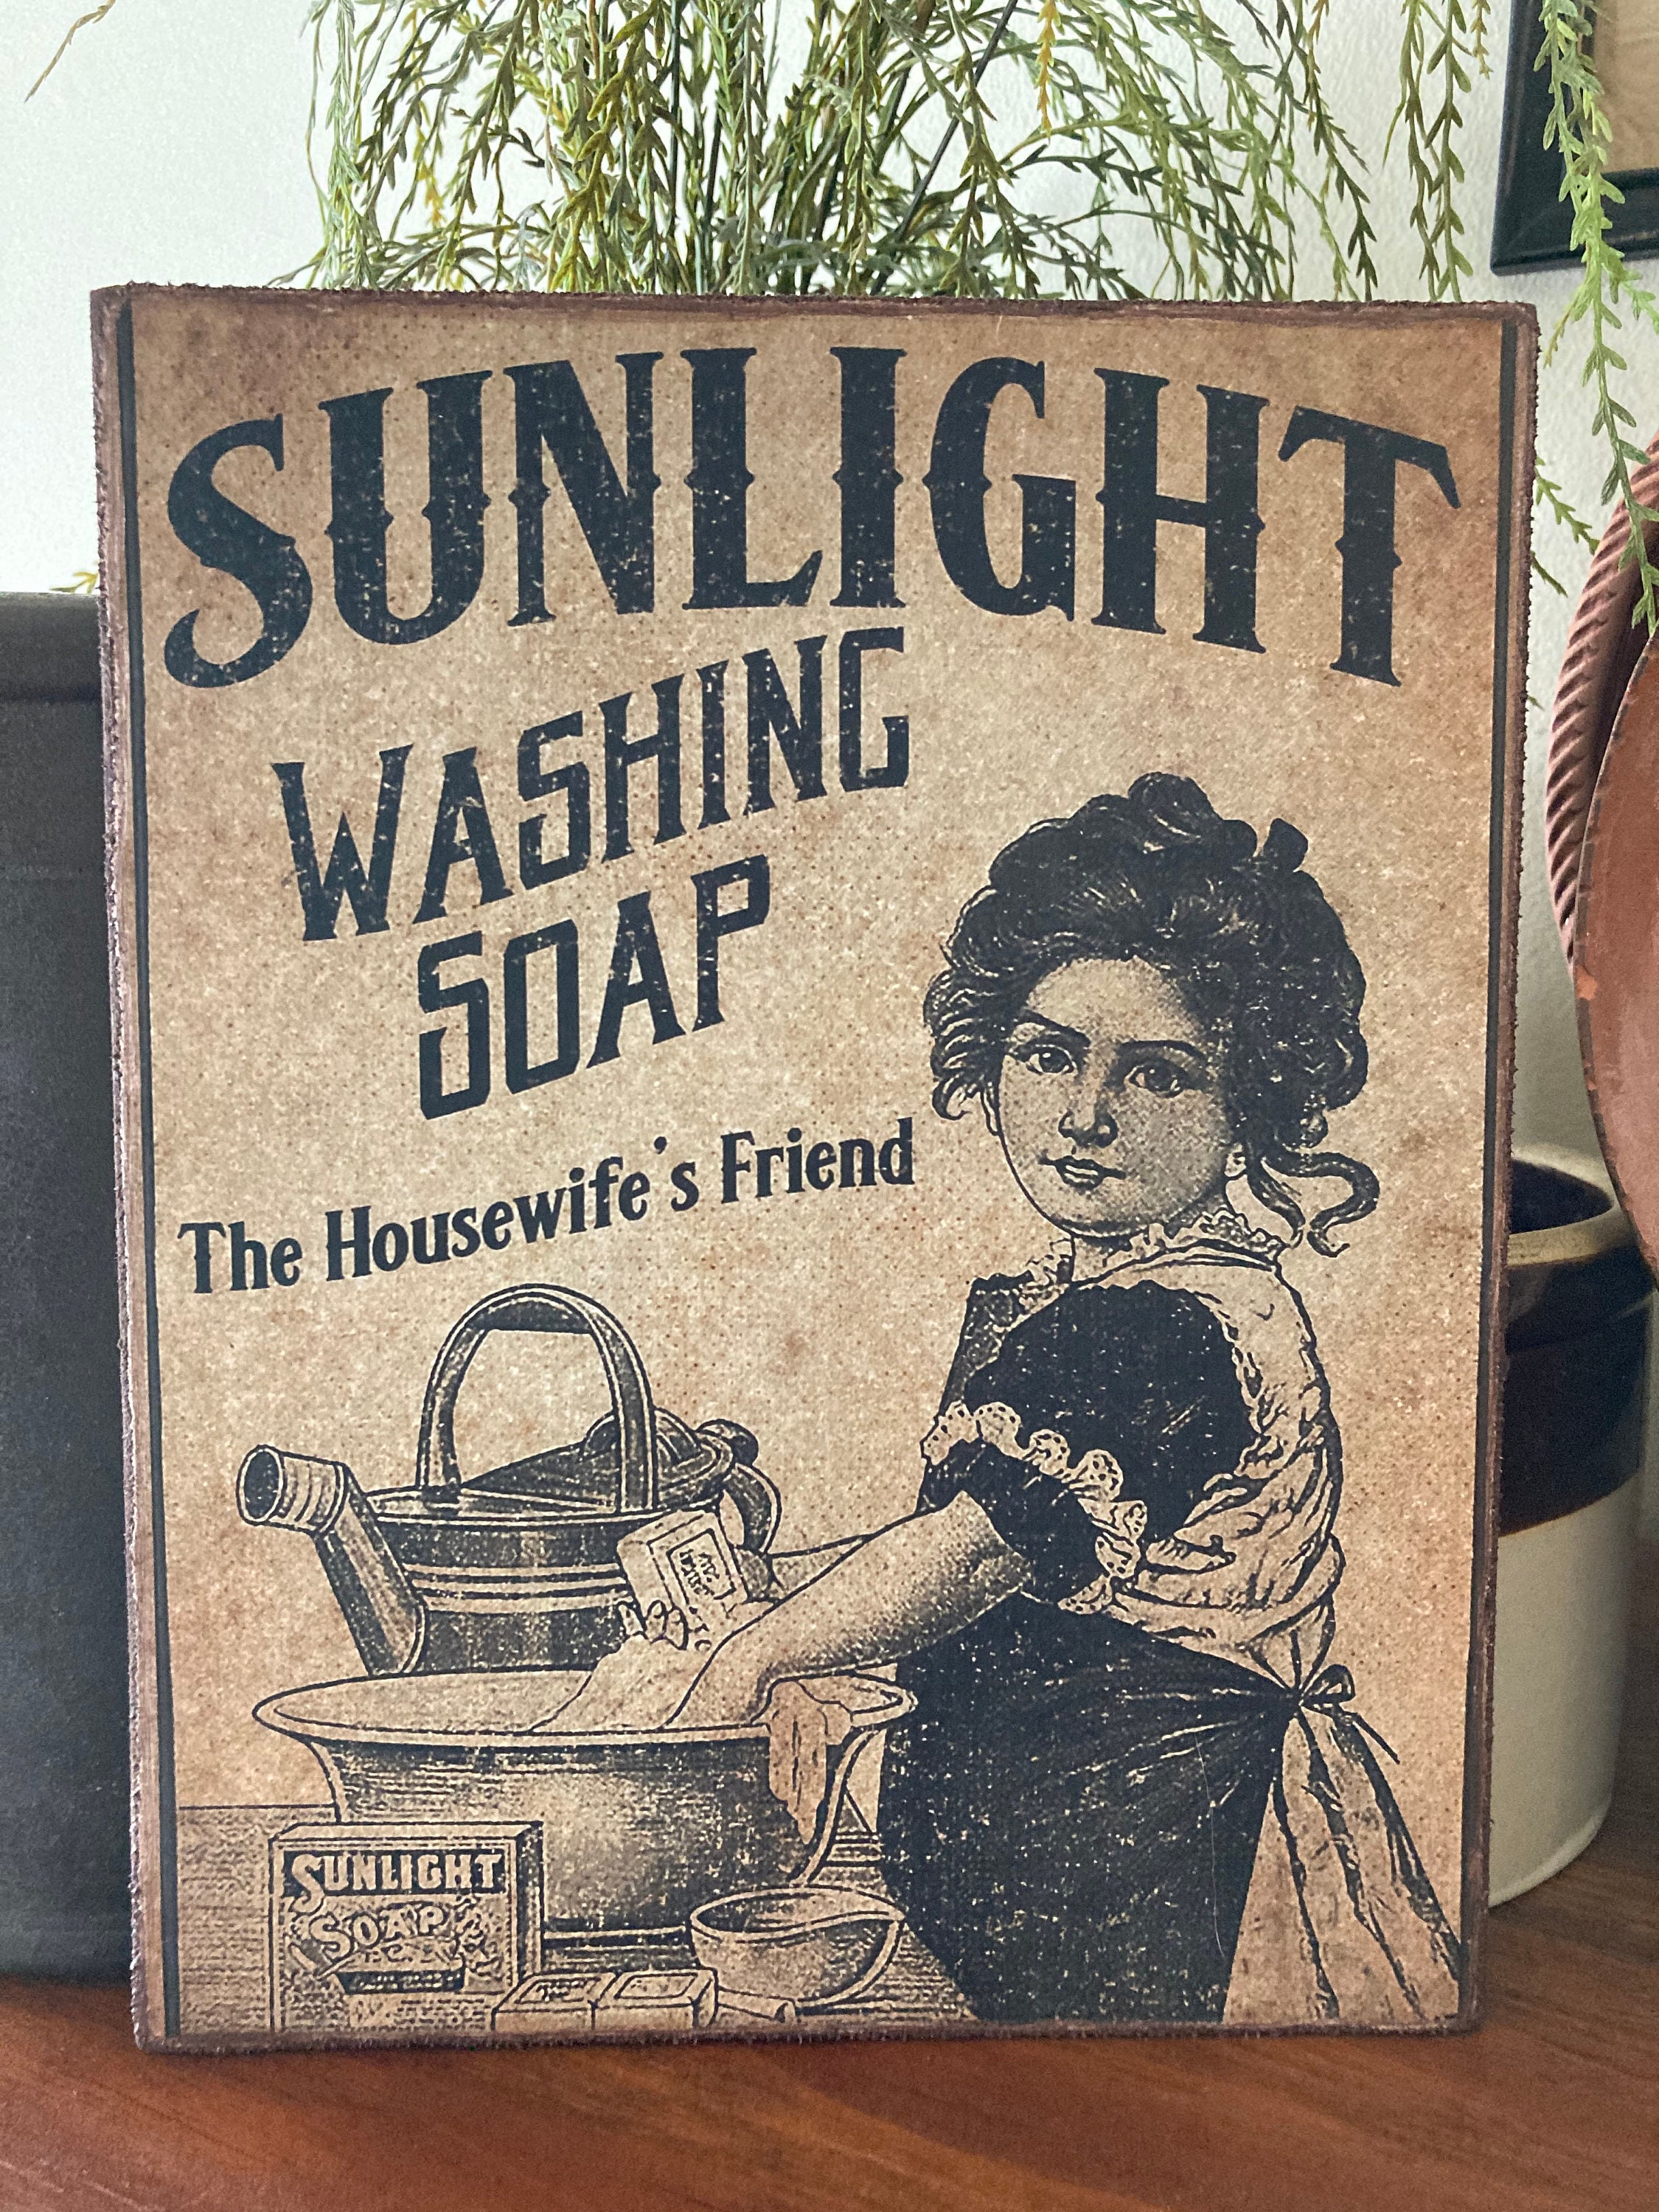 Resinol Soap vintage Print Ad September 1923 on eBid United